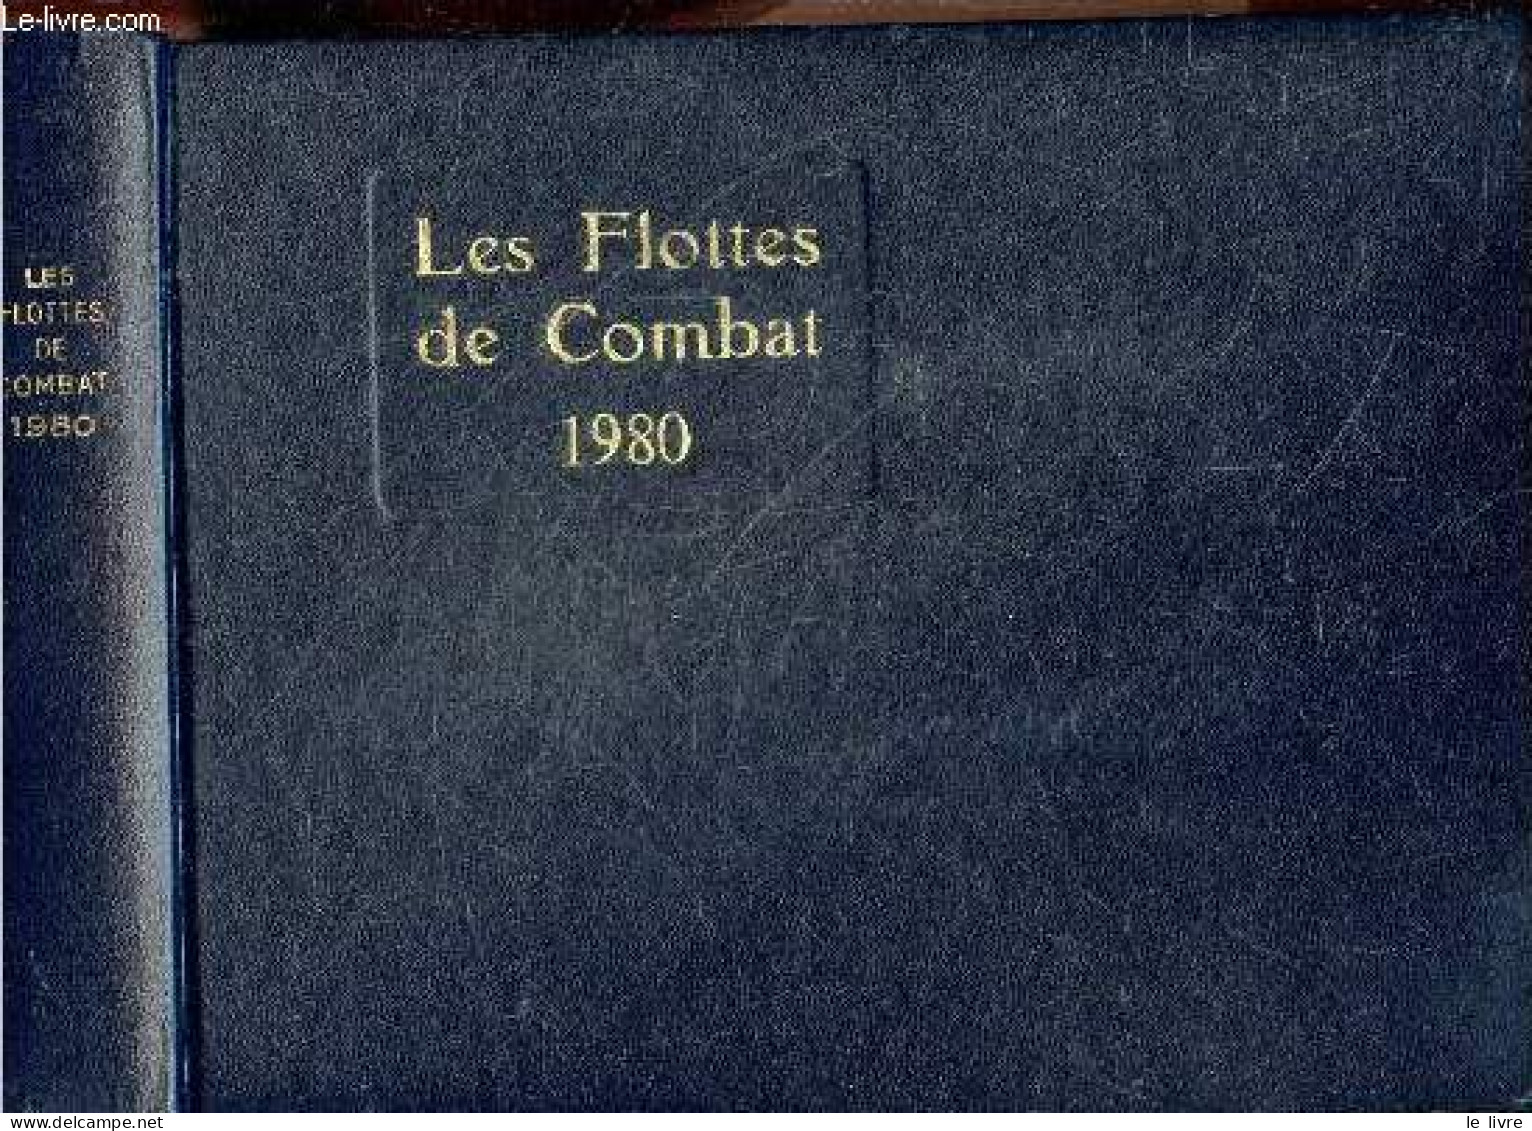 Flottes De Combat 1980 (fighting Fleets) - JEAN LABAYLE COUHAT- BALINCOURT- BRECHIGNAC .. - 1980 - Francés